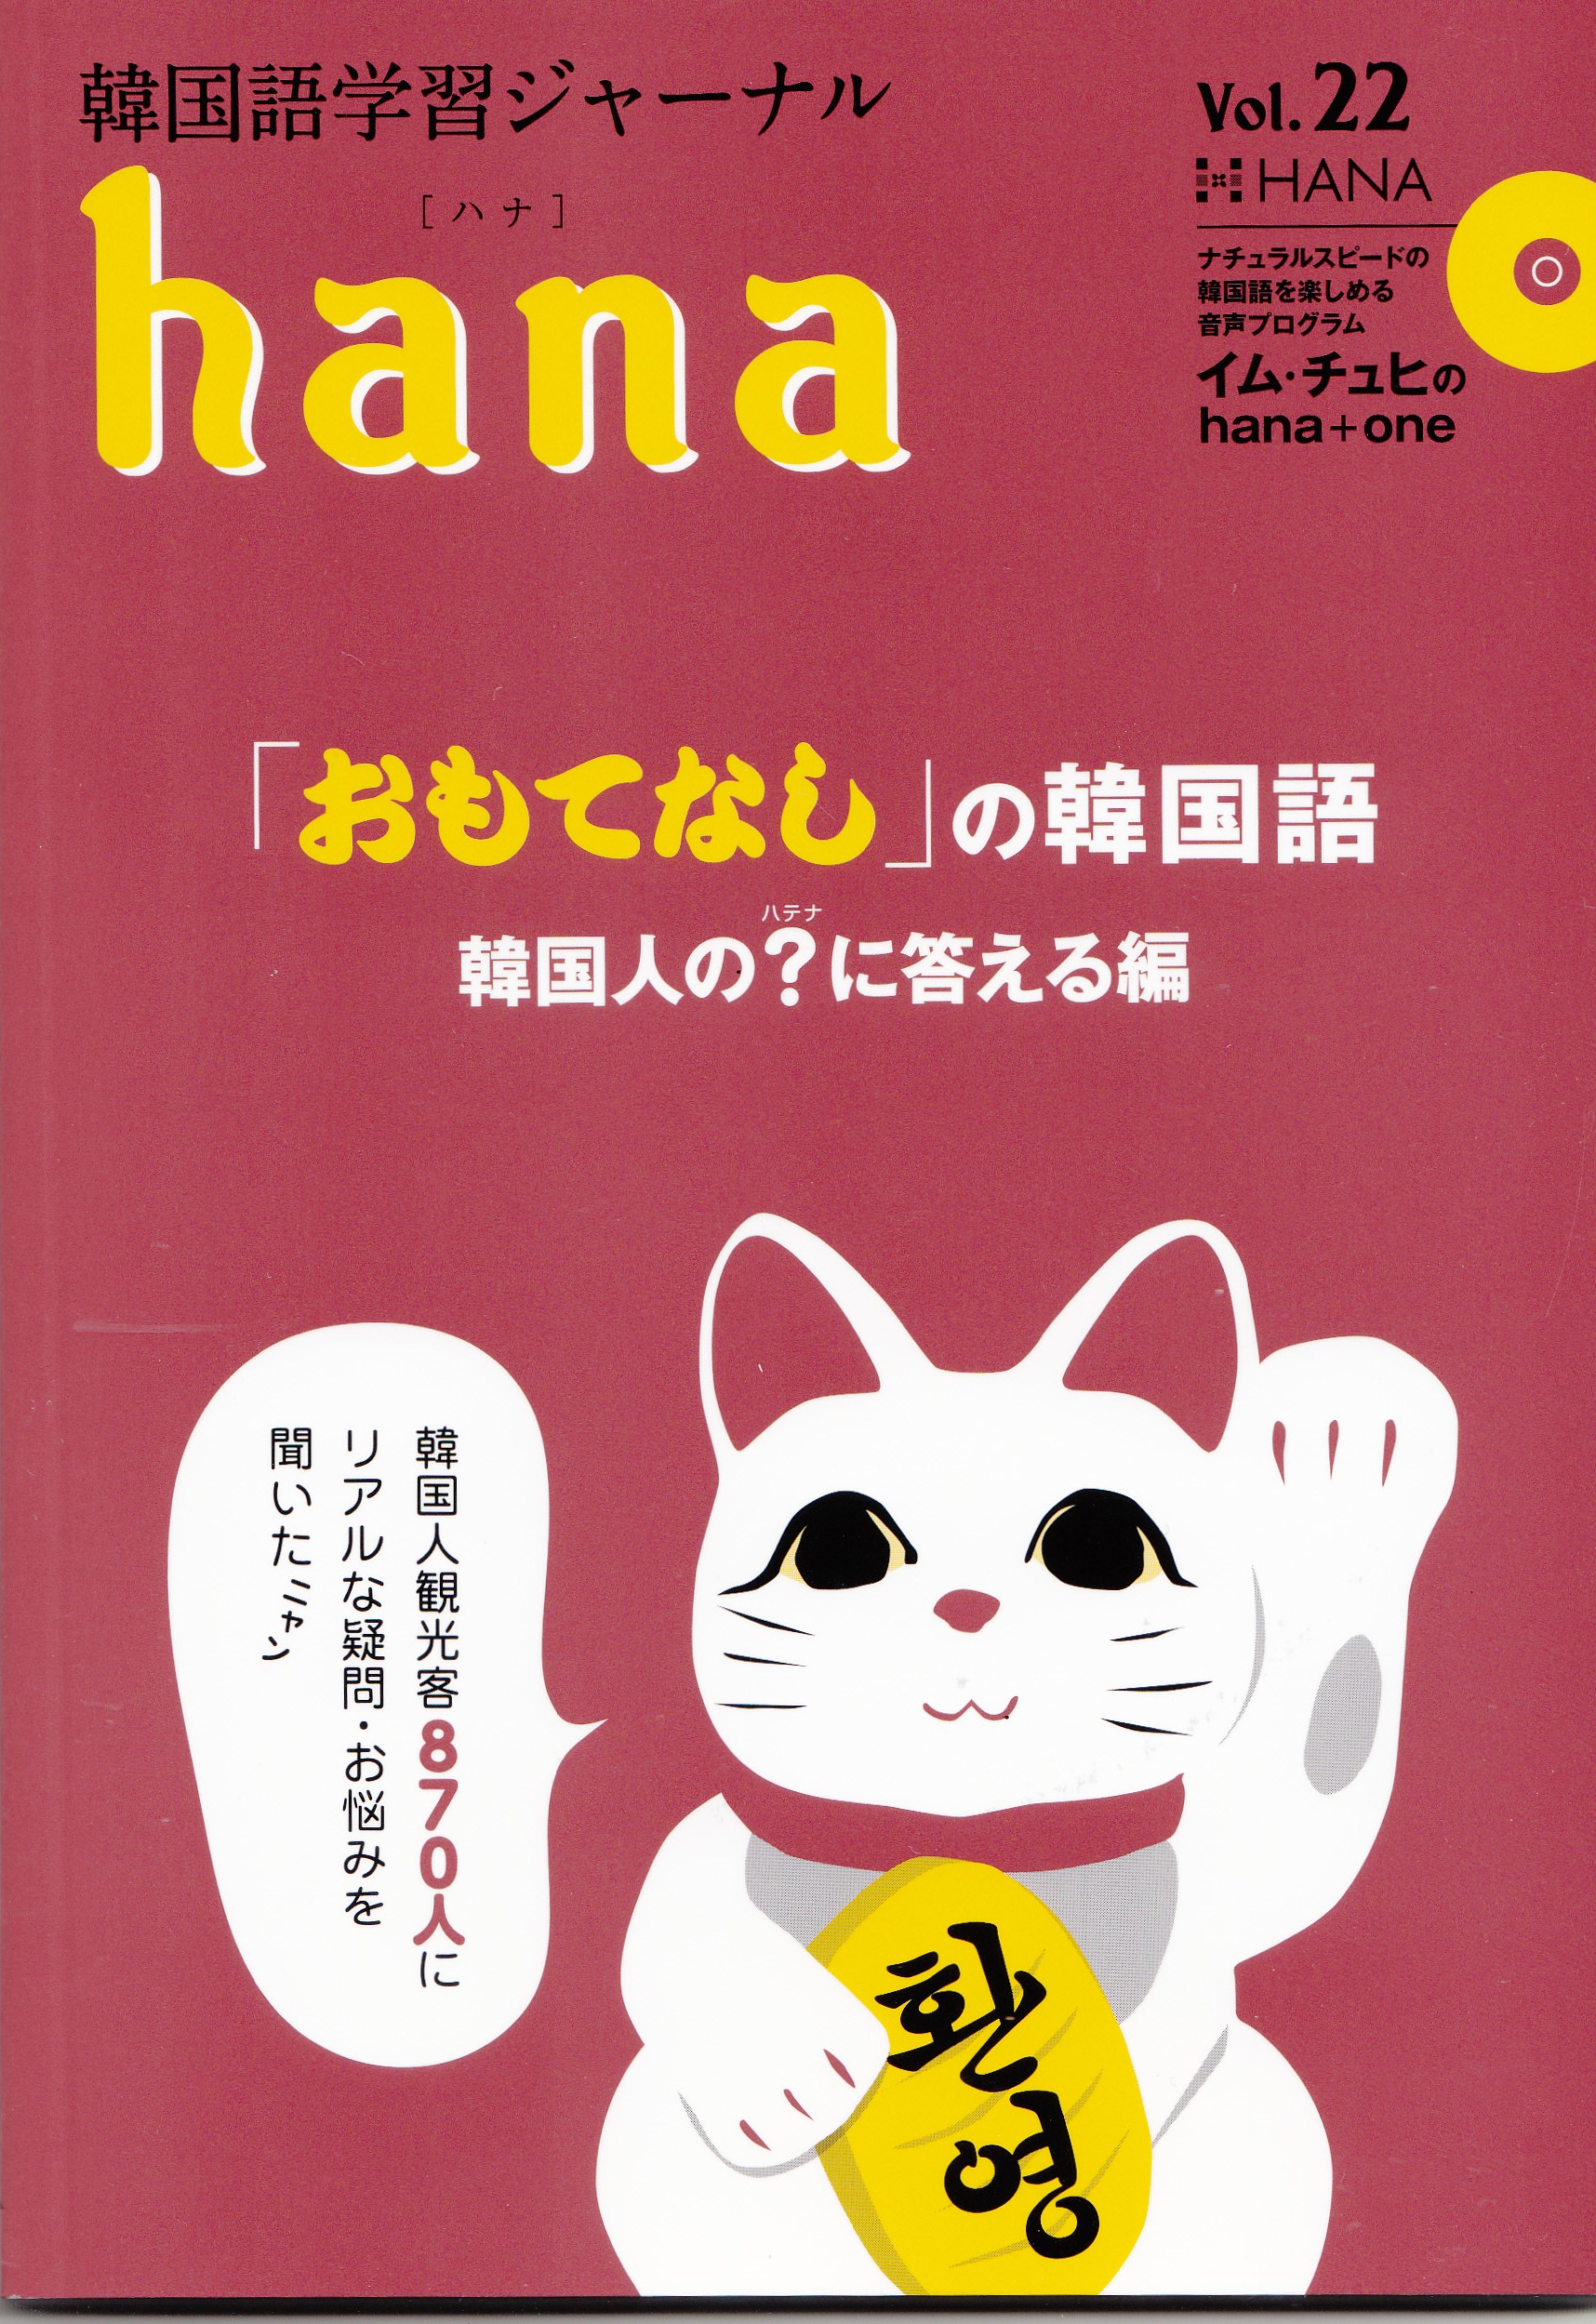 『韓国語学習ジャーナルhana vol.22』